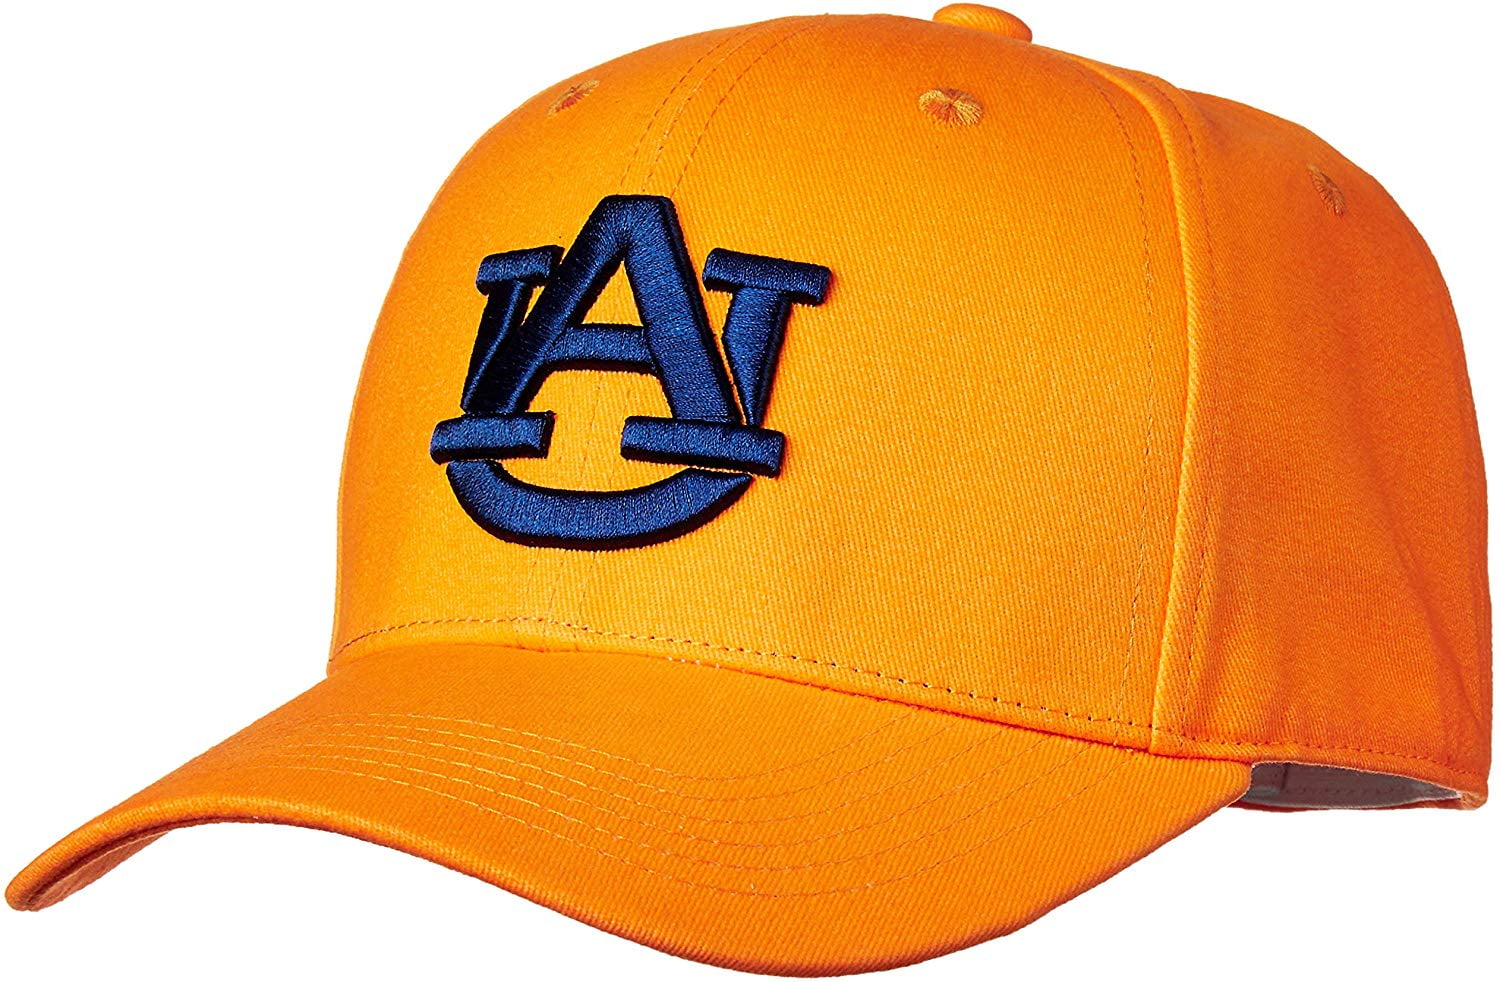 University of Louisville Cardinals Mesh Trucker Snapback Hat Cap Men Women  NCAA